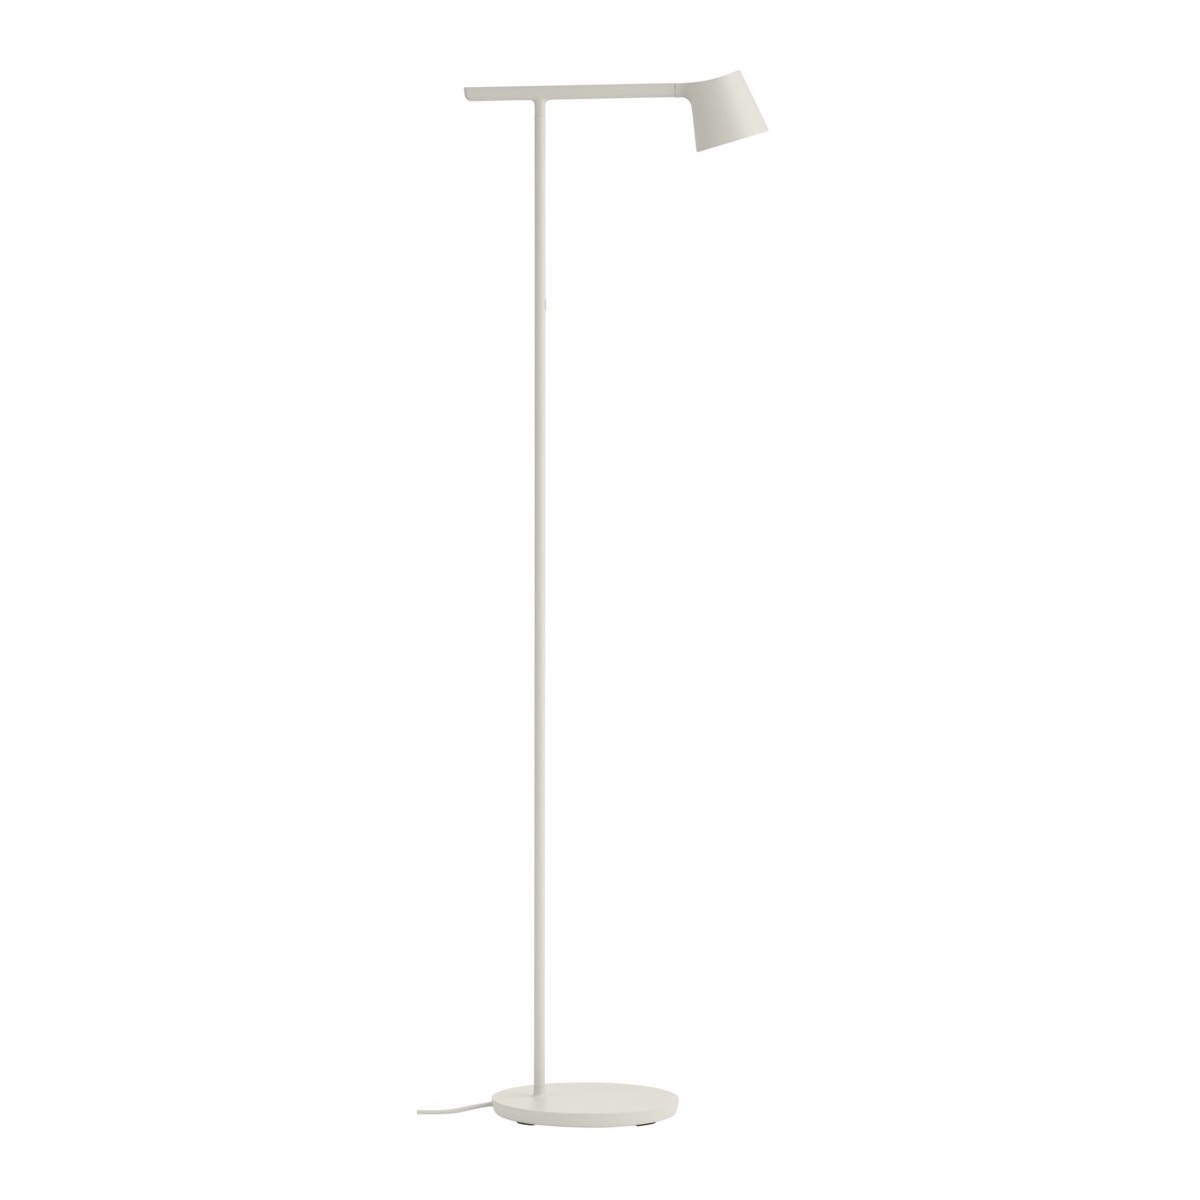 Tip floor lamp – grey